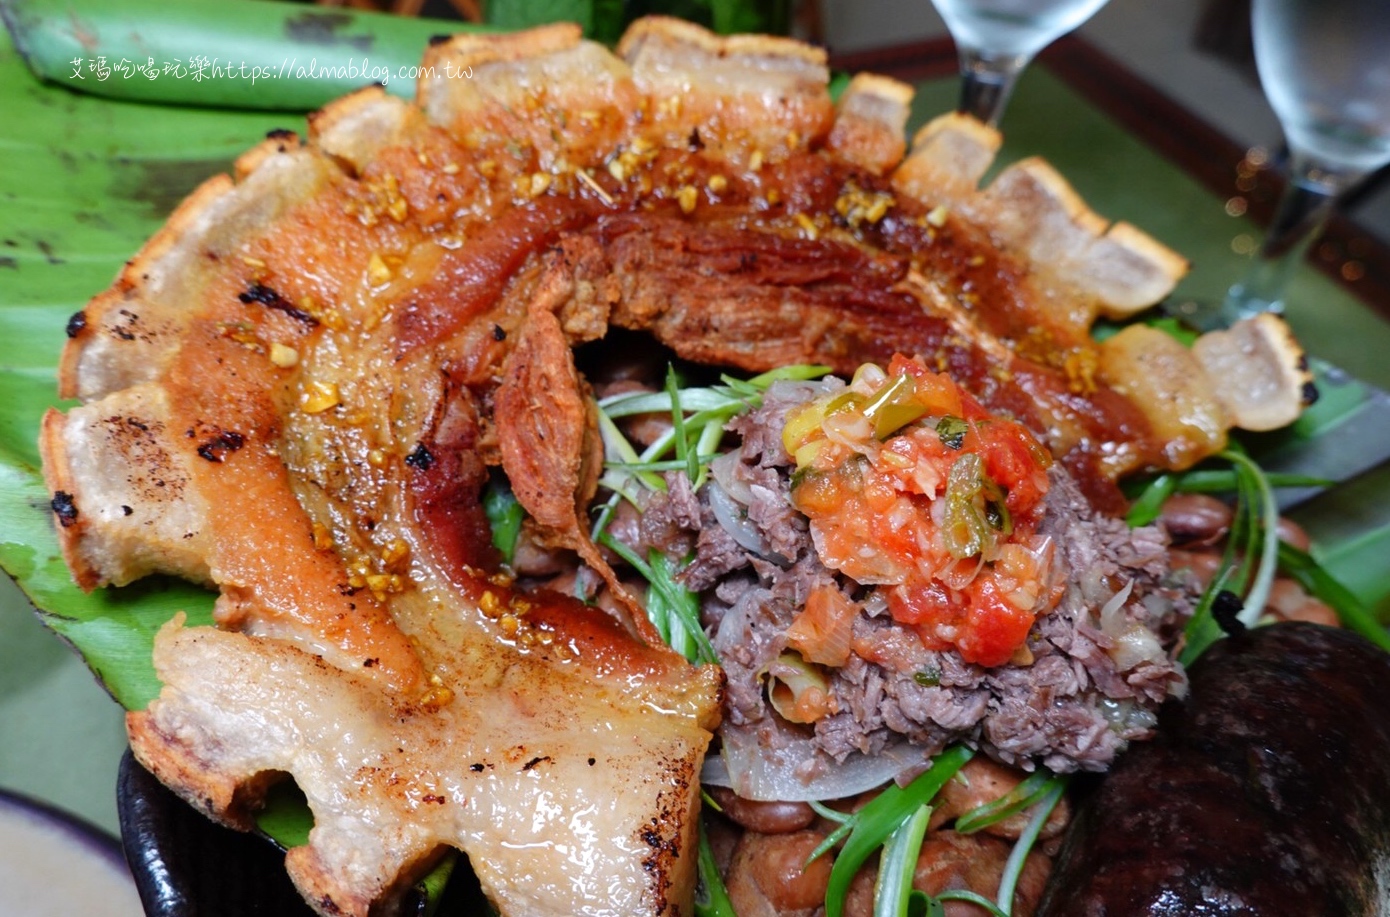 El Beso de La Rana 箭毒蛙之吻,哥倫比亞,林口餐廳,派薩盤,炸餡餃,起司麵包,龜山美食